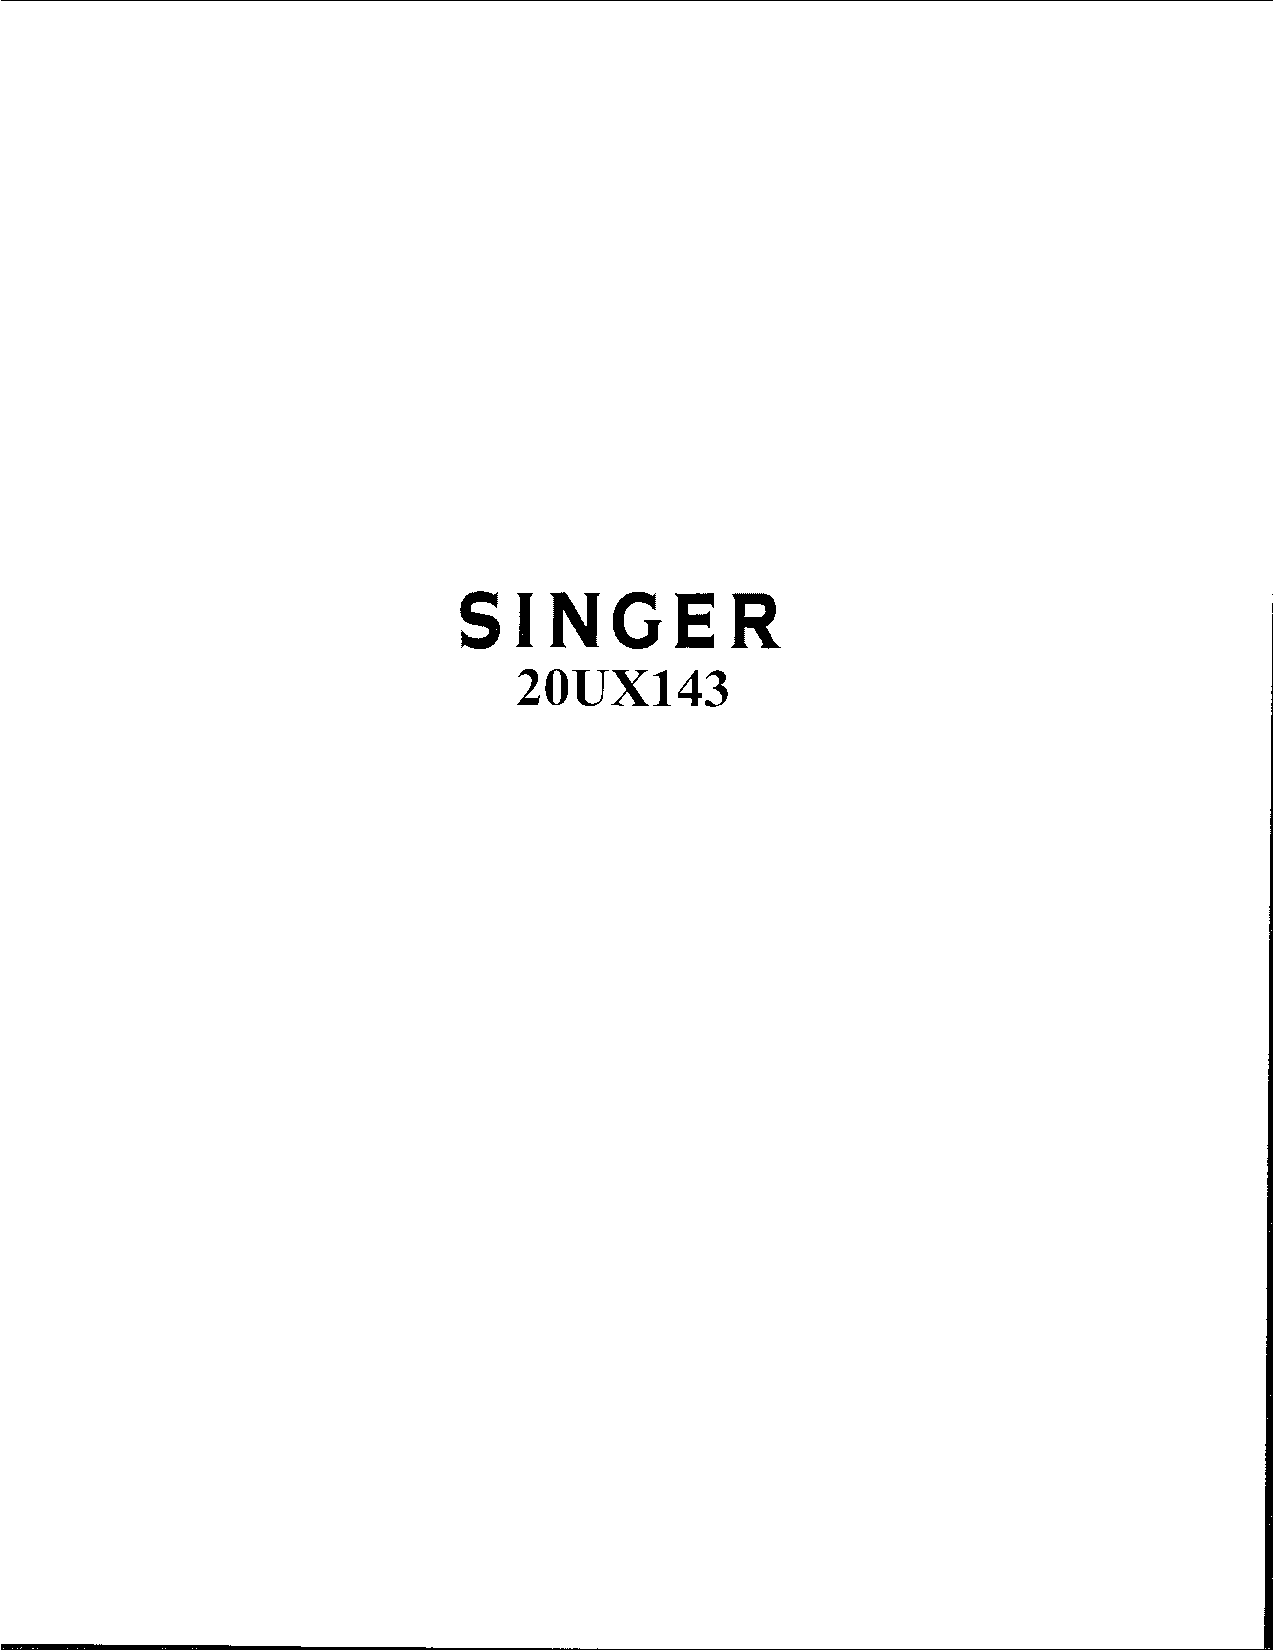 Singer 20UX143 User Manual